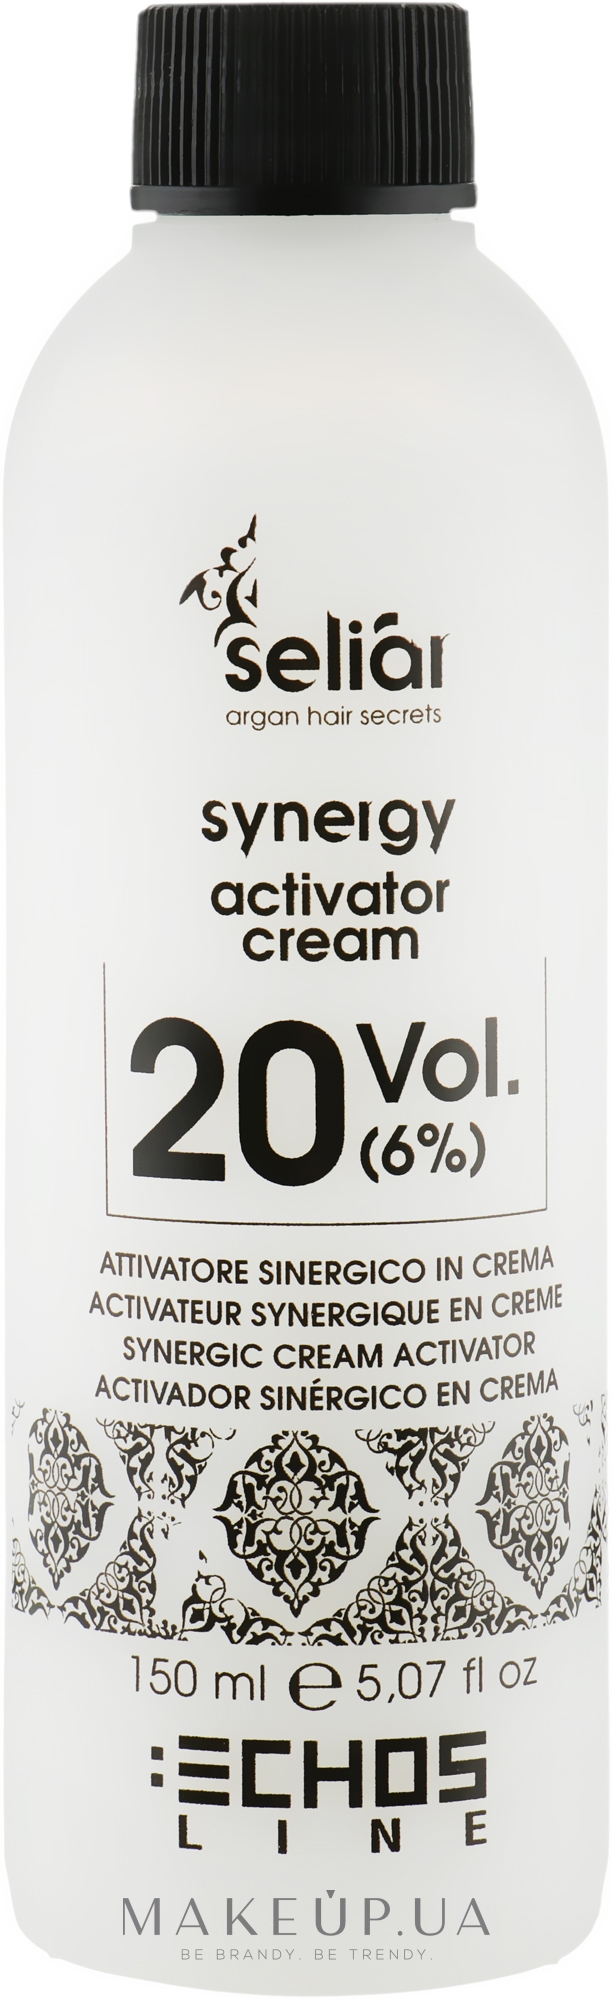 Крем-активатор - Echosline Seliar Synergic Cream Activator 20 vol (6%) — фото 150ml